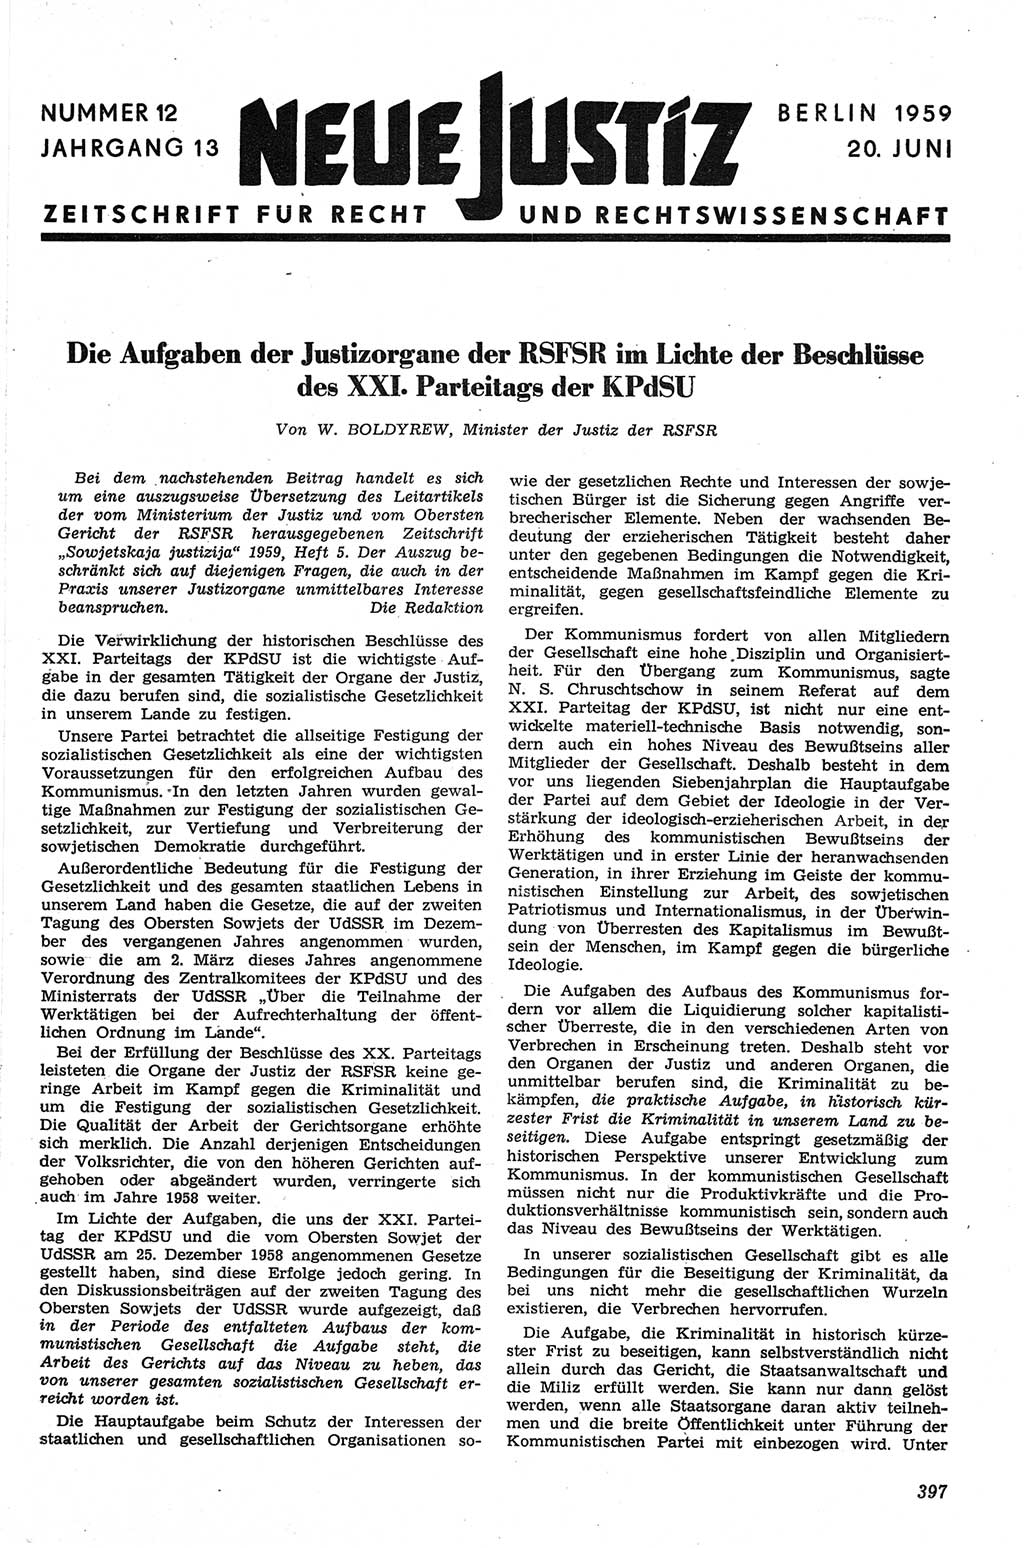 Neue Justiz (NJ), Zeitschrift für Recht und Rechtswissenschaft [Deutsche Demokratische Republik (DDR)], 13. Jahrgang 1959, Seite 397 (NJ DDR 1959, S. 397)